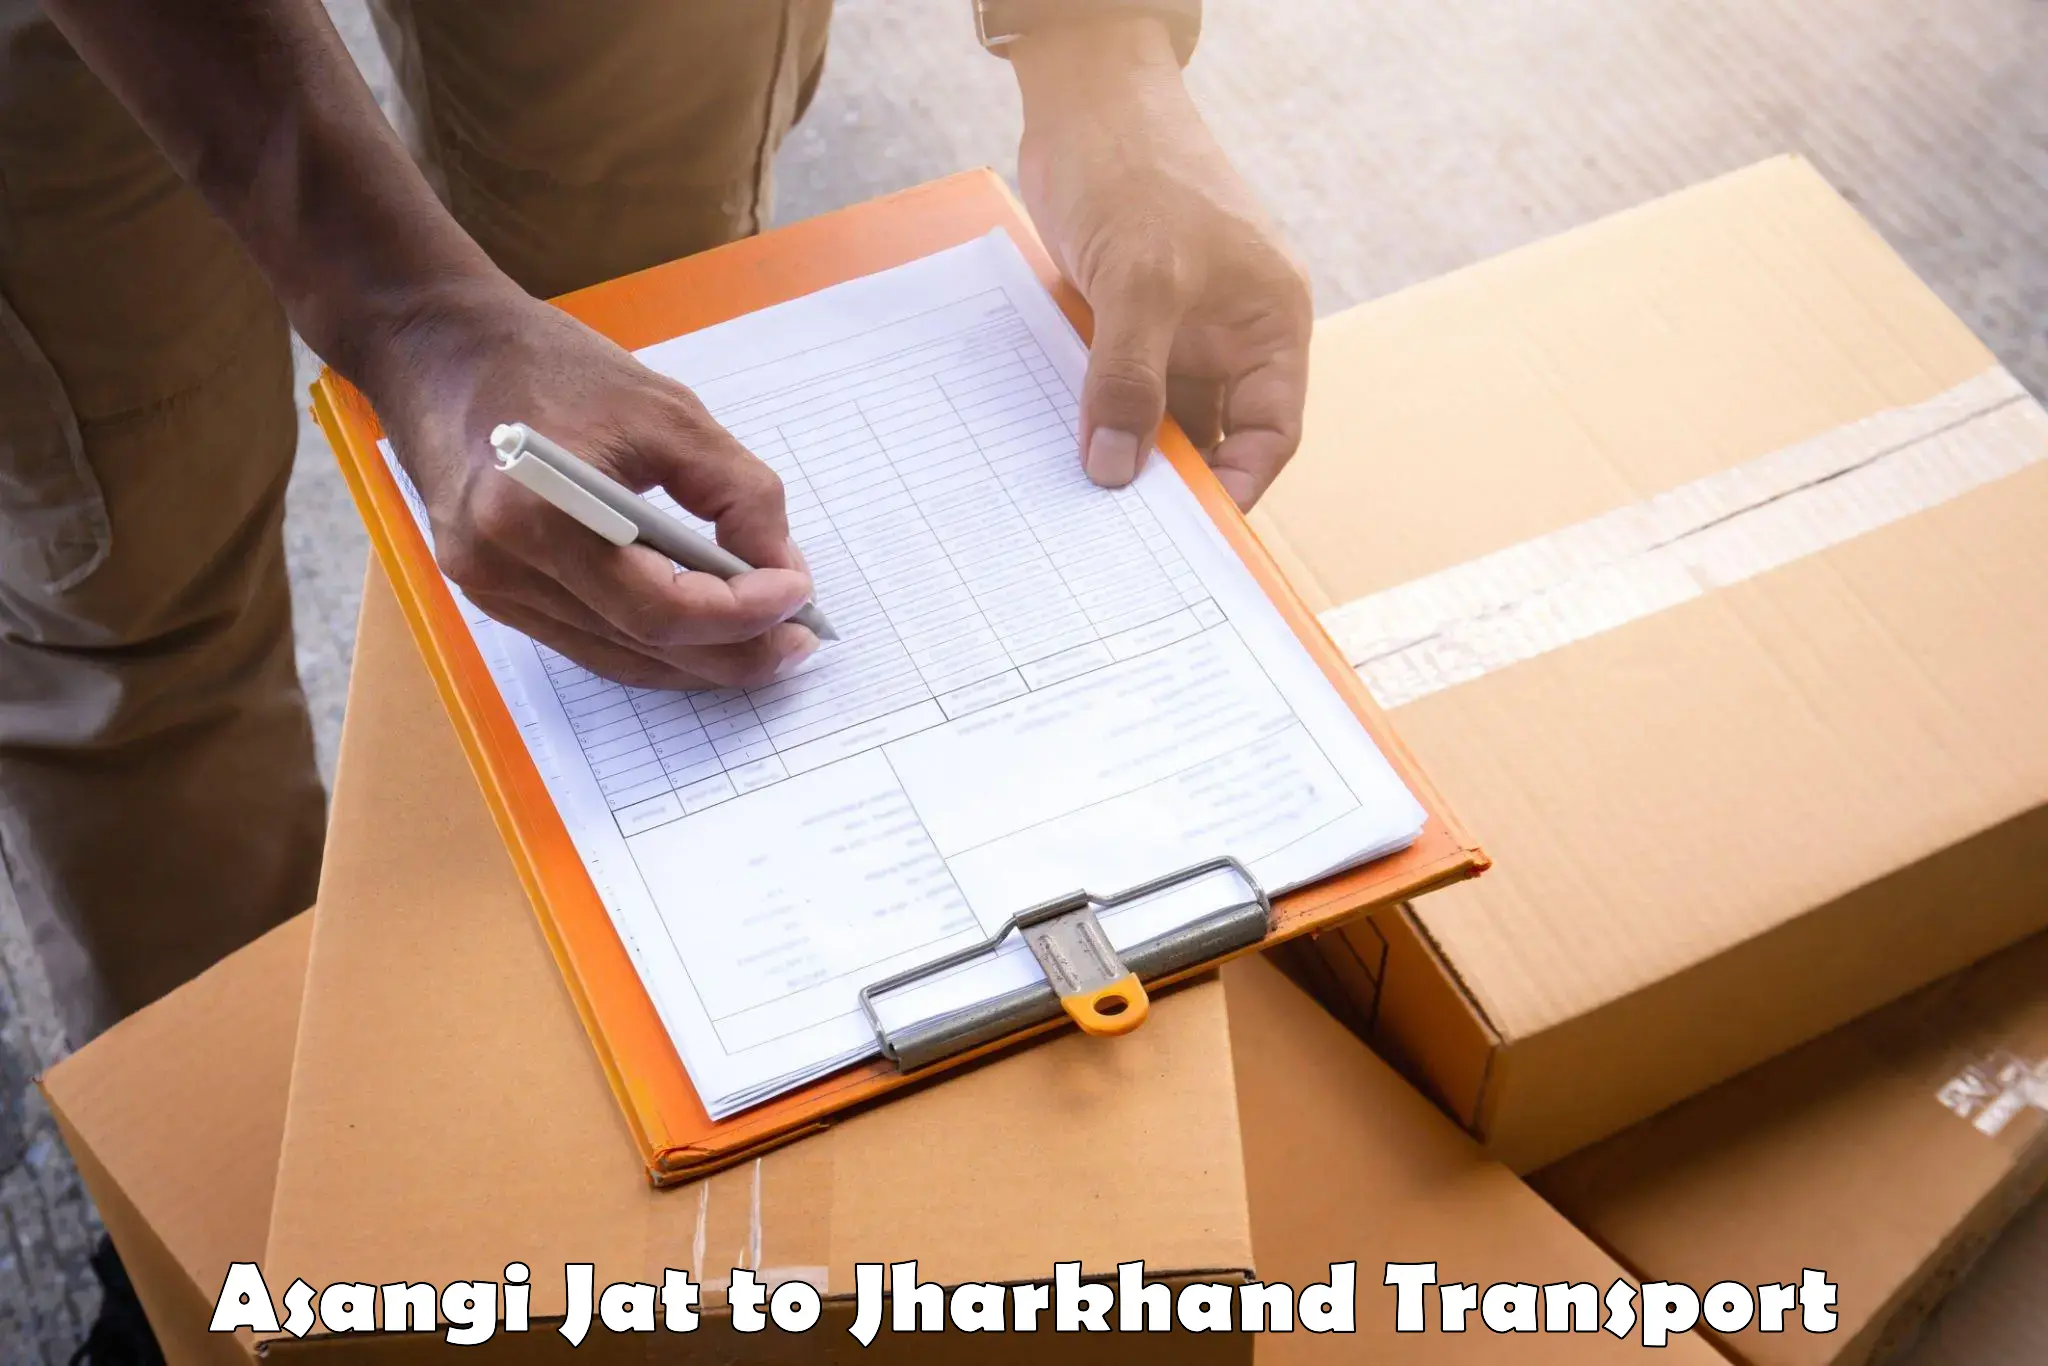 Furniture transport service in Asangi Jat to Dhalbhumgarh